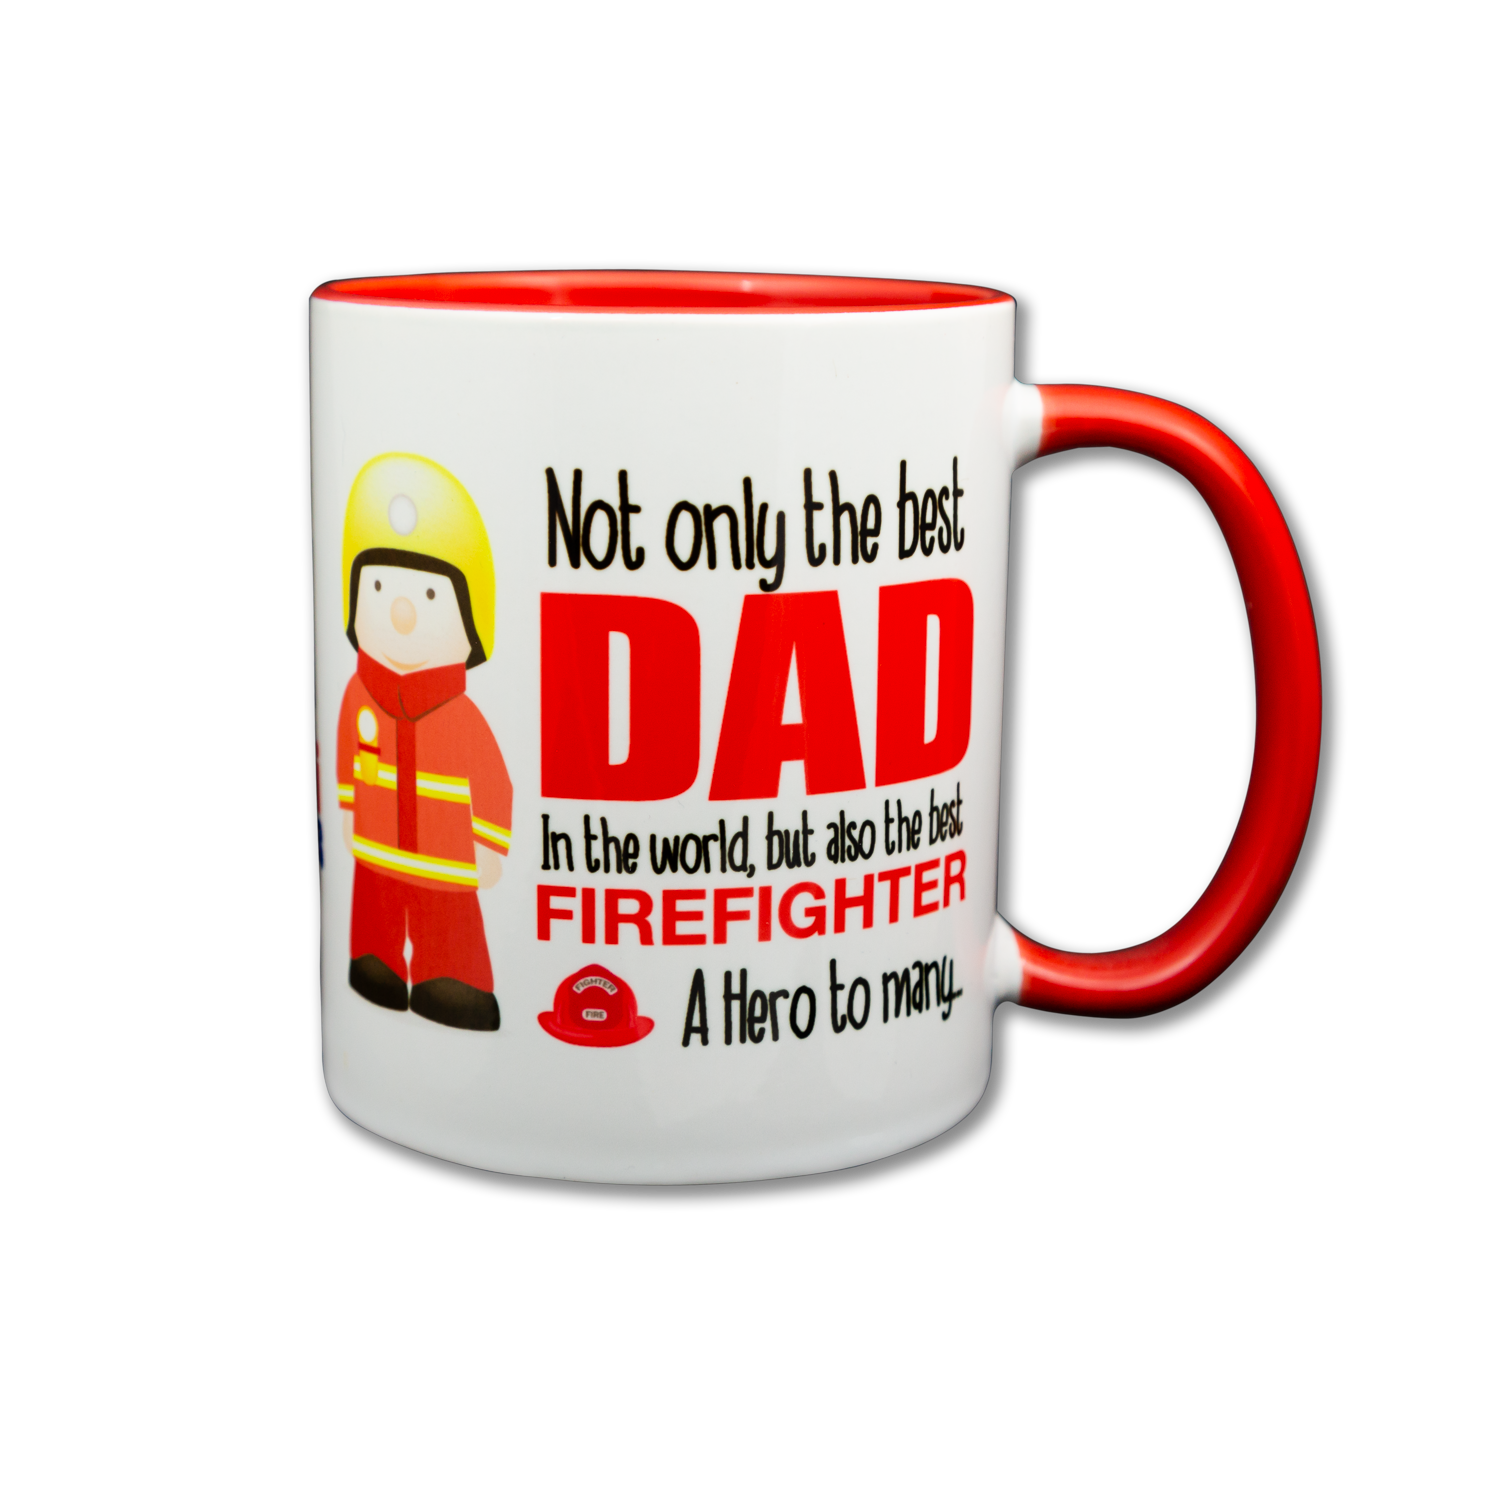 Top Dad – The Burning Mug